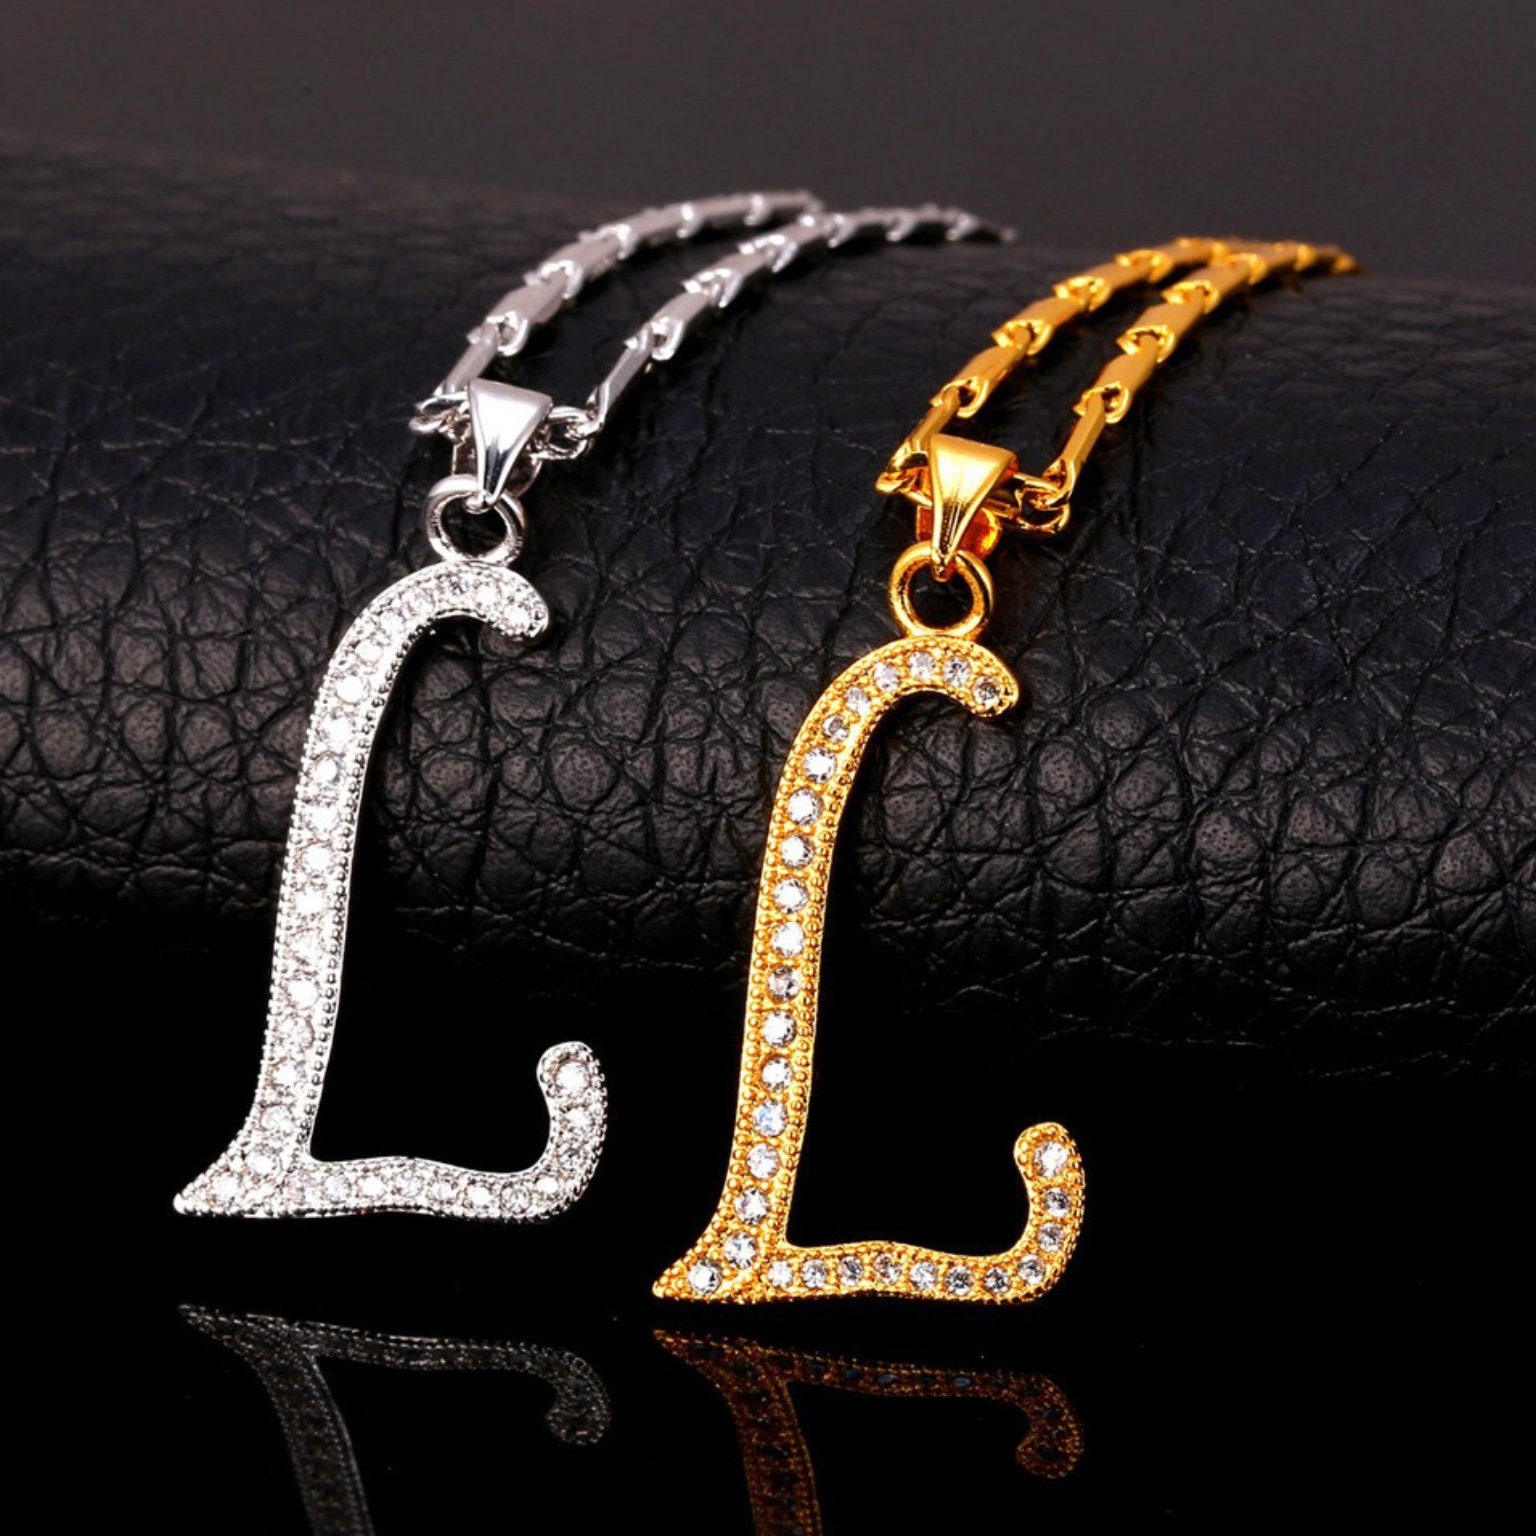 Louis Vuitton Silver-tone Locket Pendant Necklace Monogram S00 M62484 Men  A2097